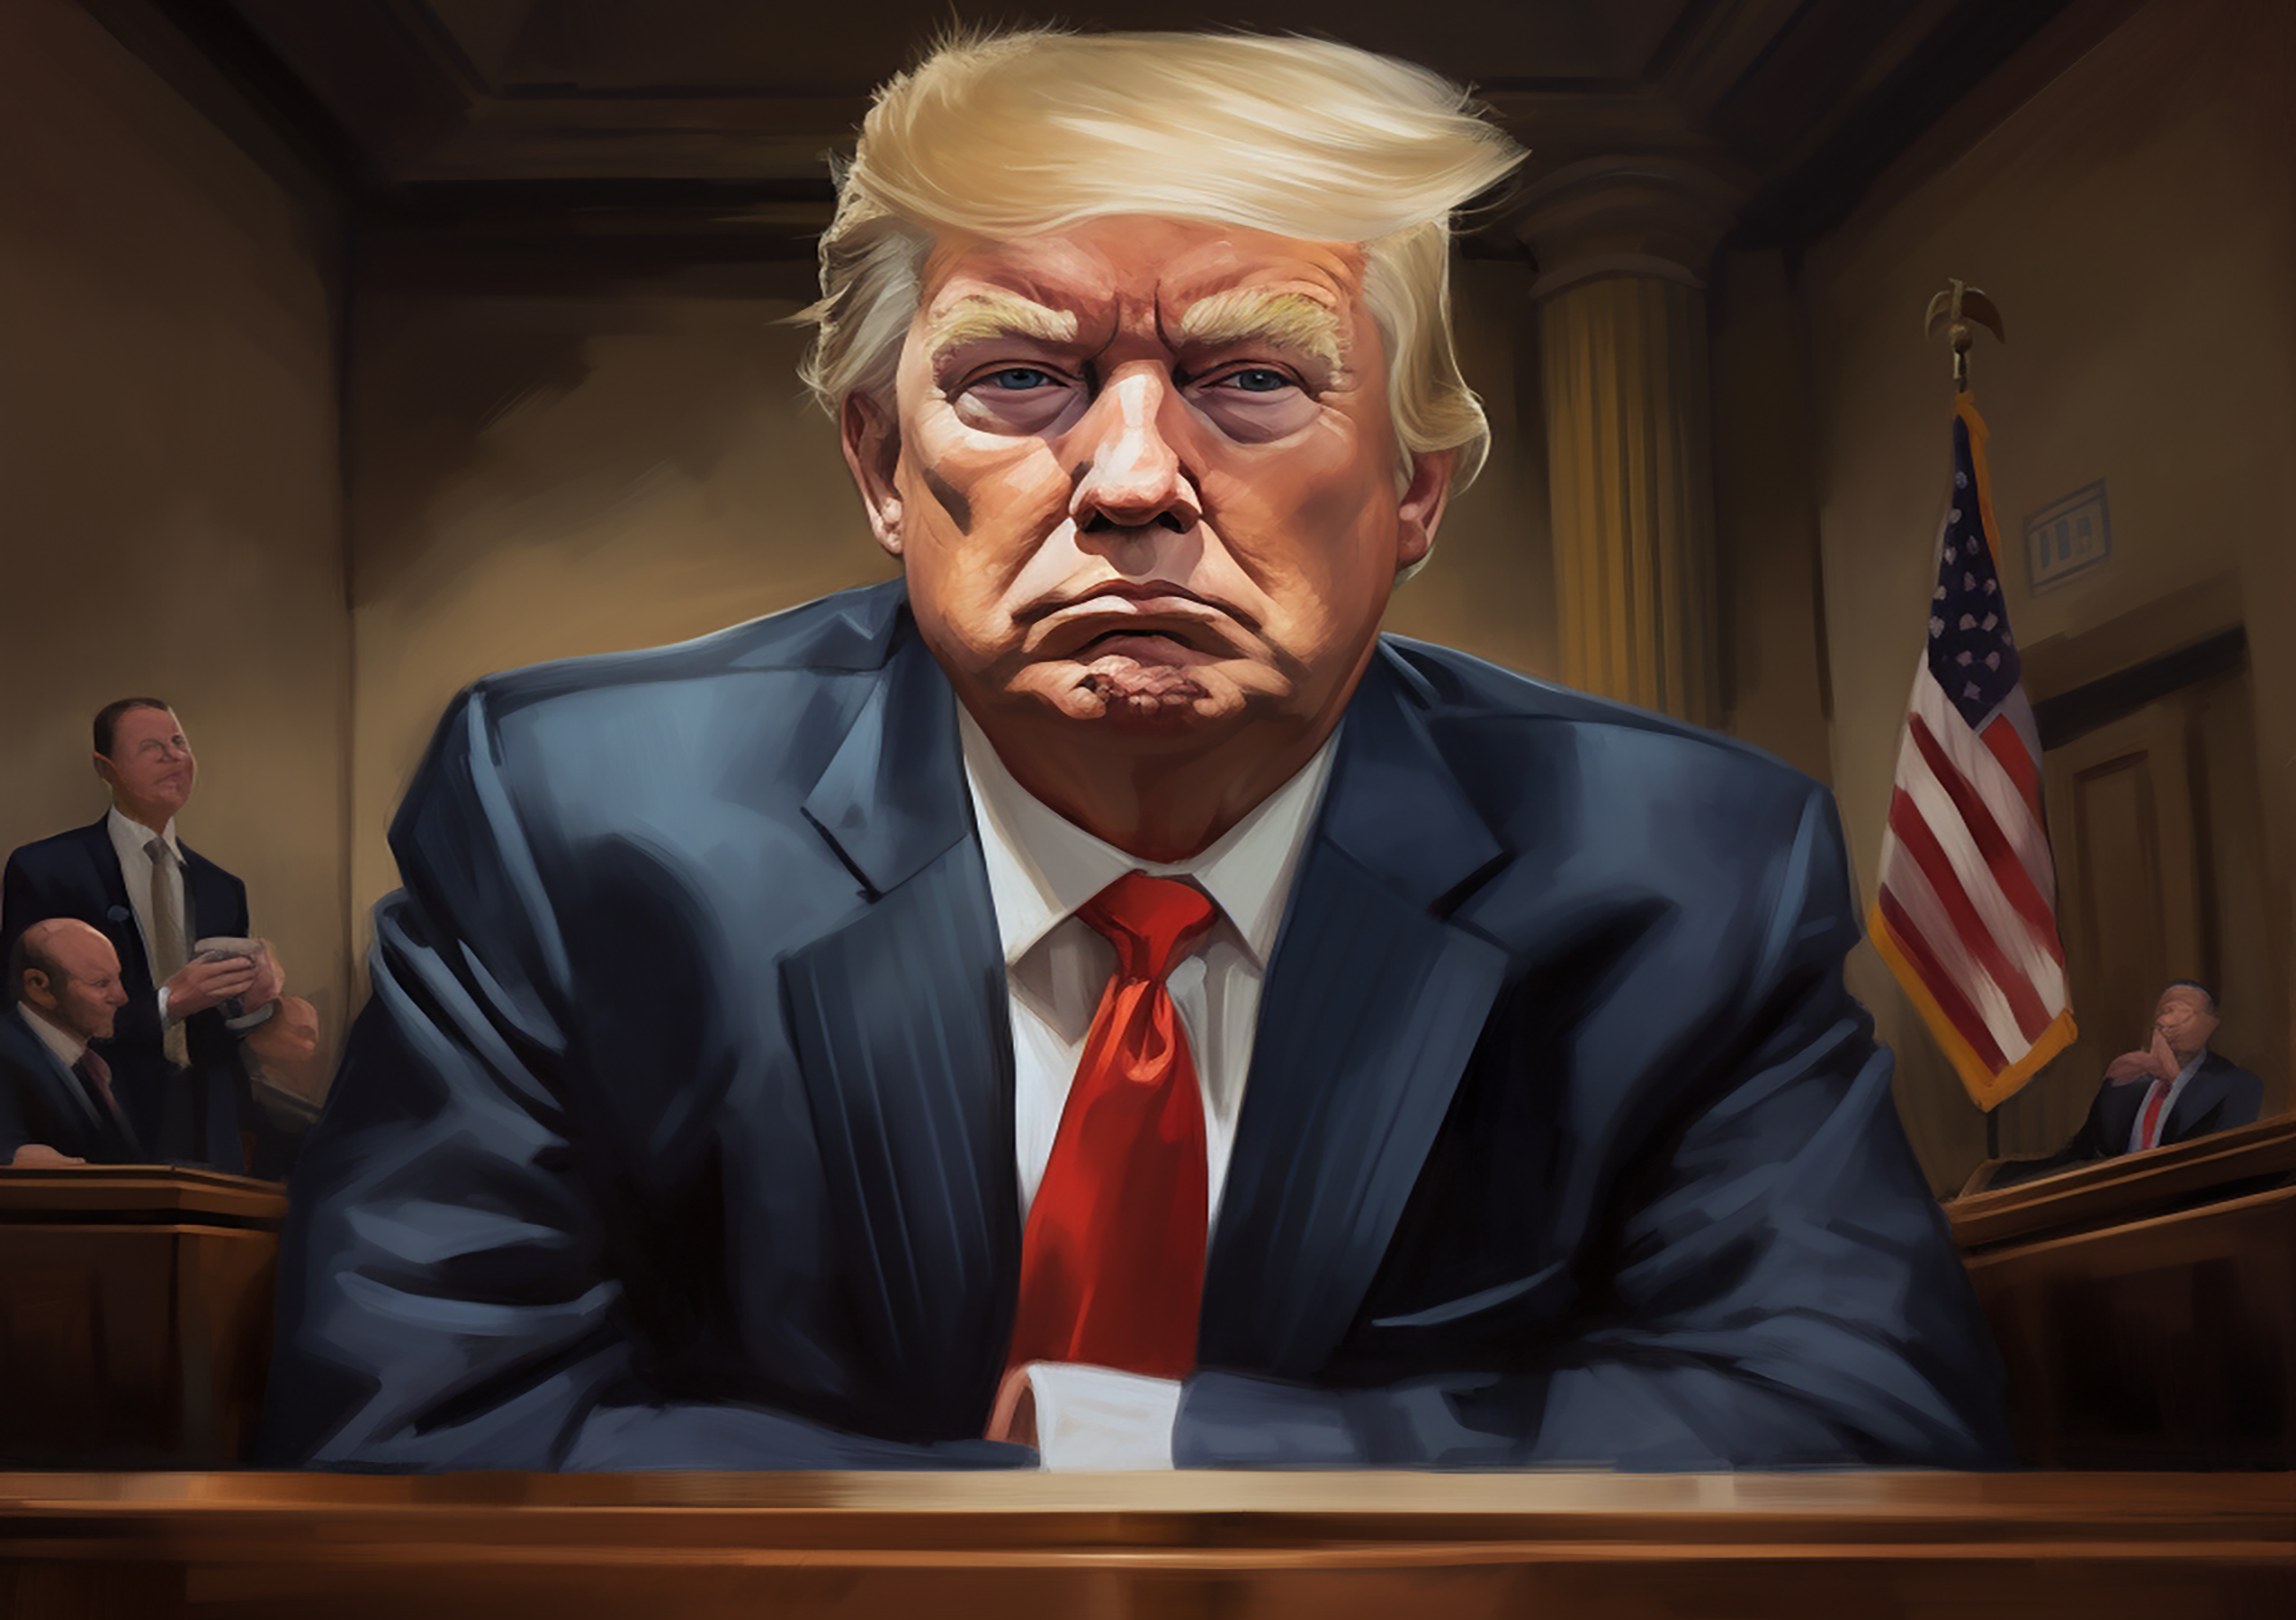 Donald J. Trump caricature